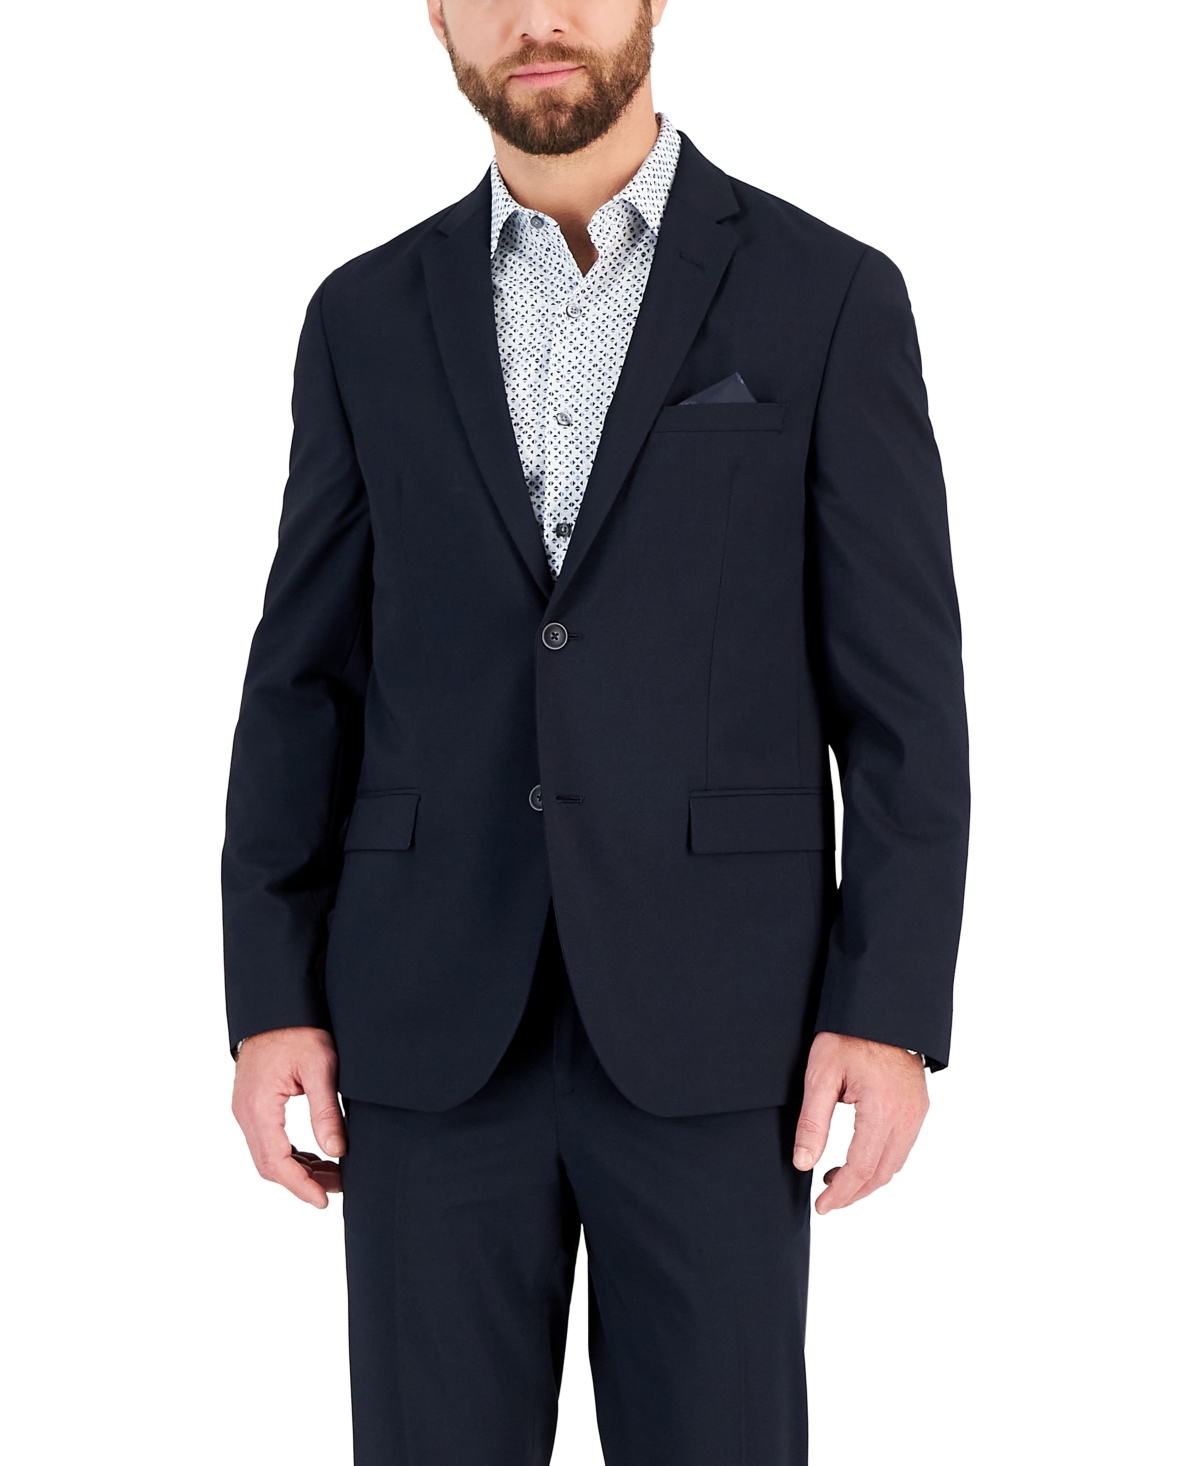 Men's Slim-Fit Spandex Super-Stretch Suit Jacket - White